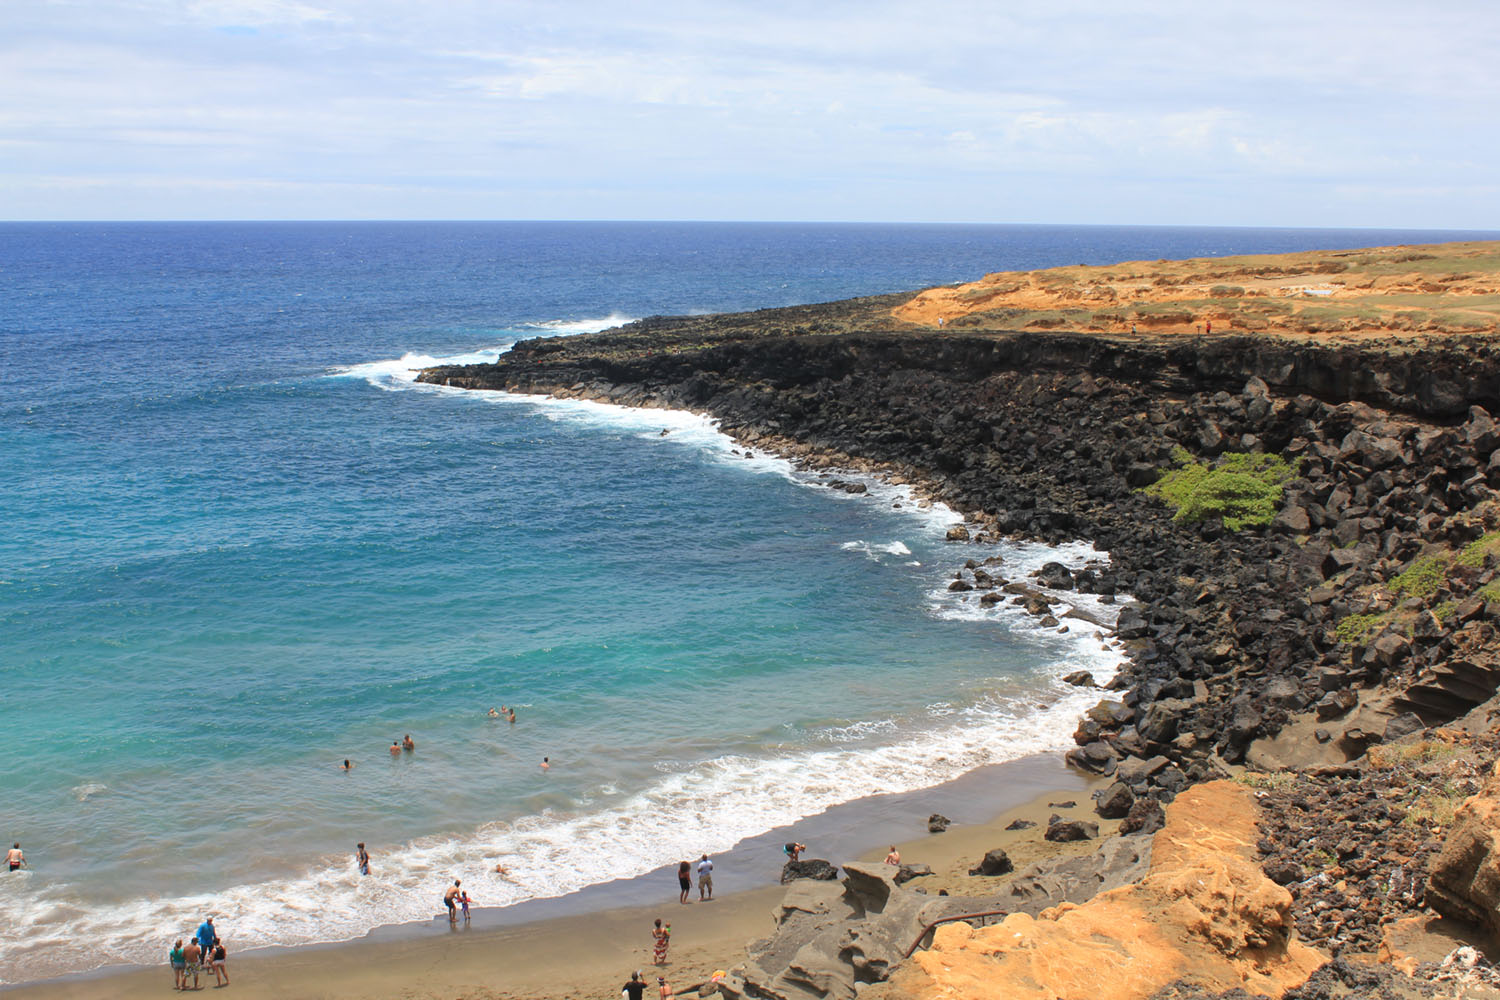 Été 2016 – Big Island-Hawaii, partie 2 (L’apnée et les plages de Big Island)